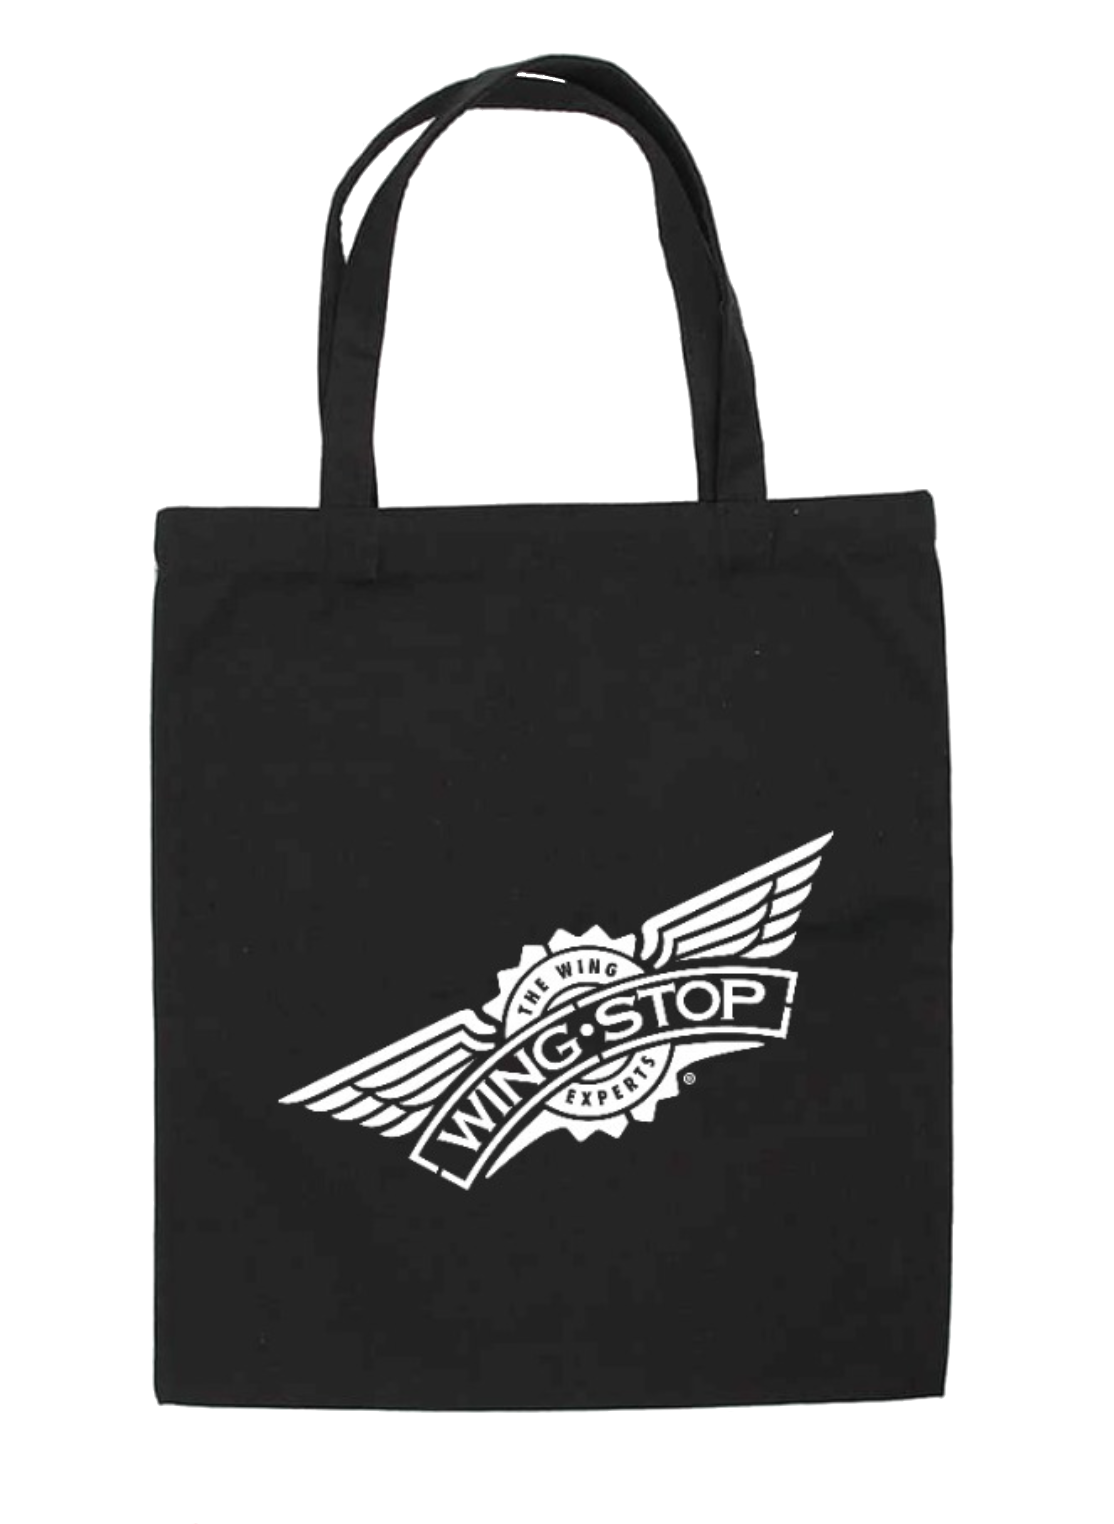 wingstop tote bag